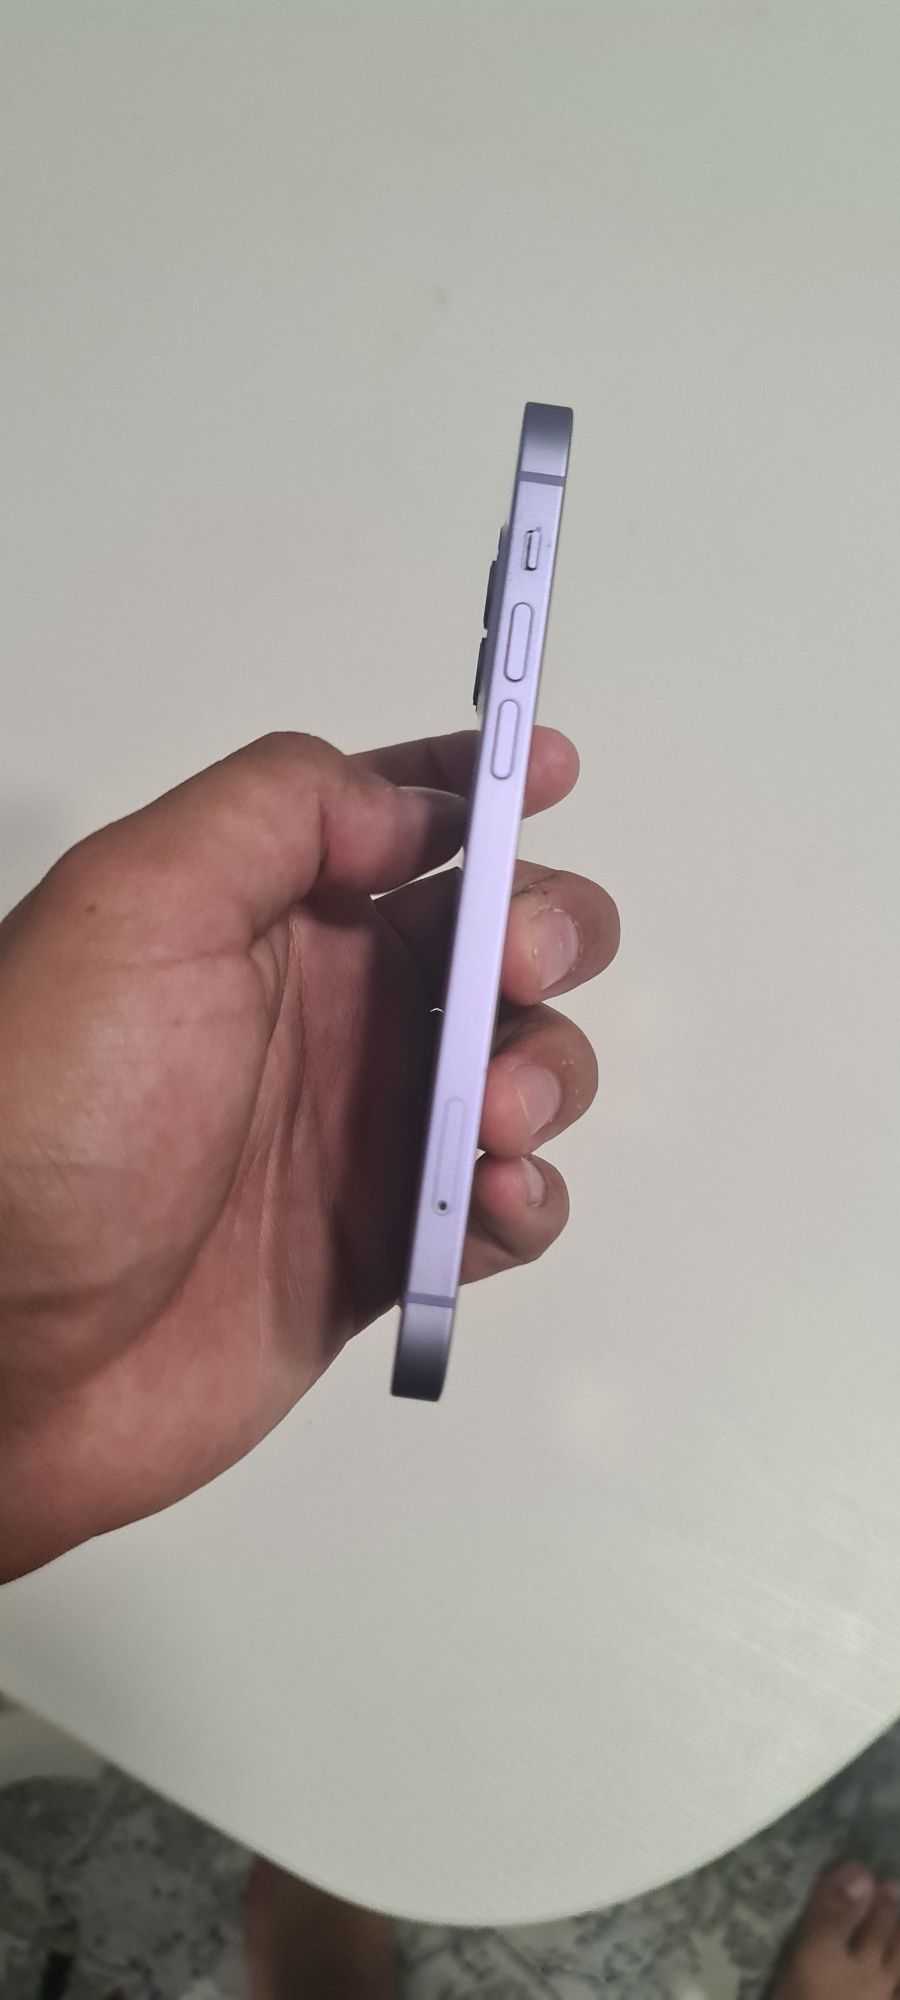 Iphone 12 фиолетовый